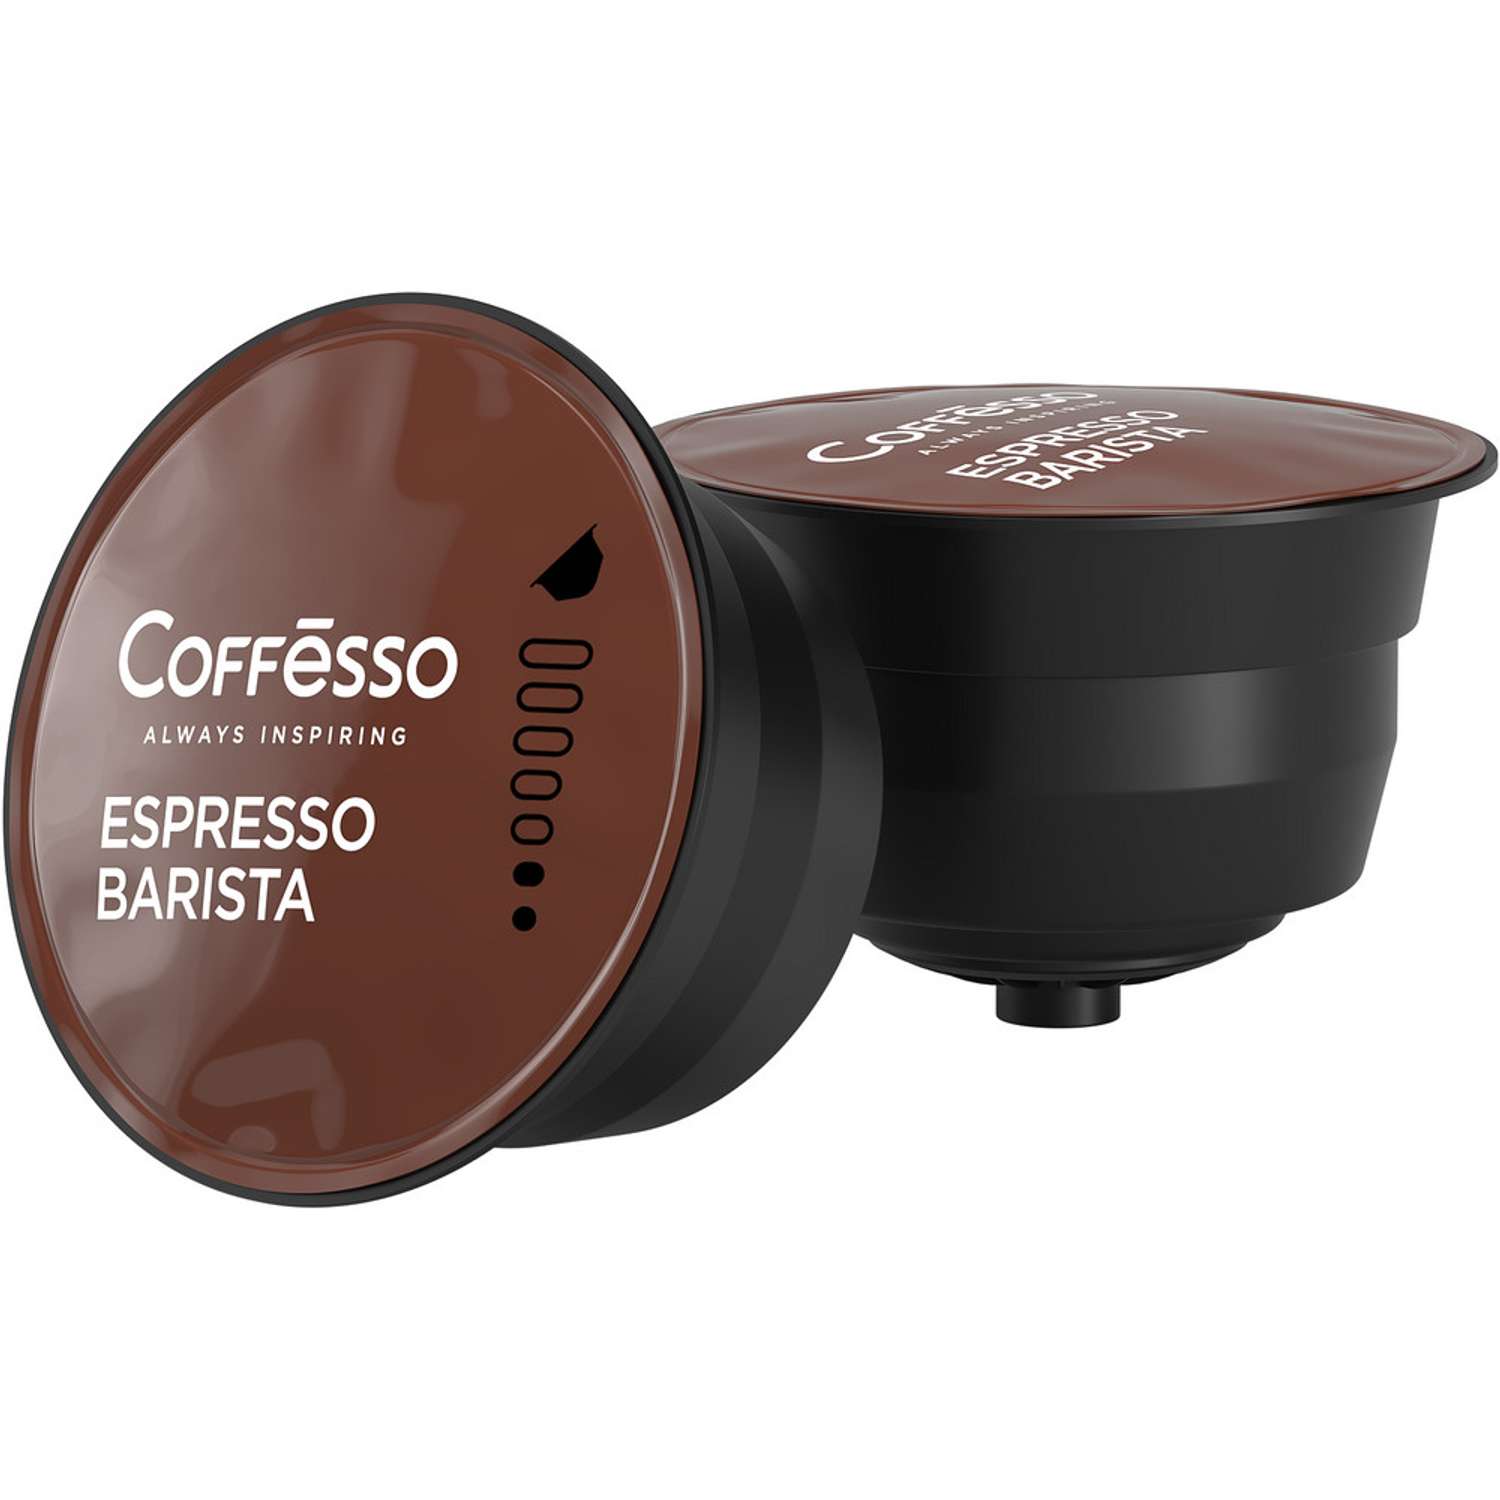 Кофе в капсулах Coffesso Espresso Barista 88г капсула - фото 4